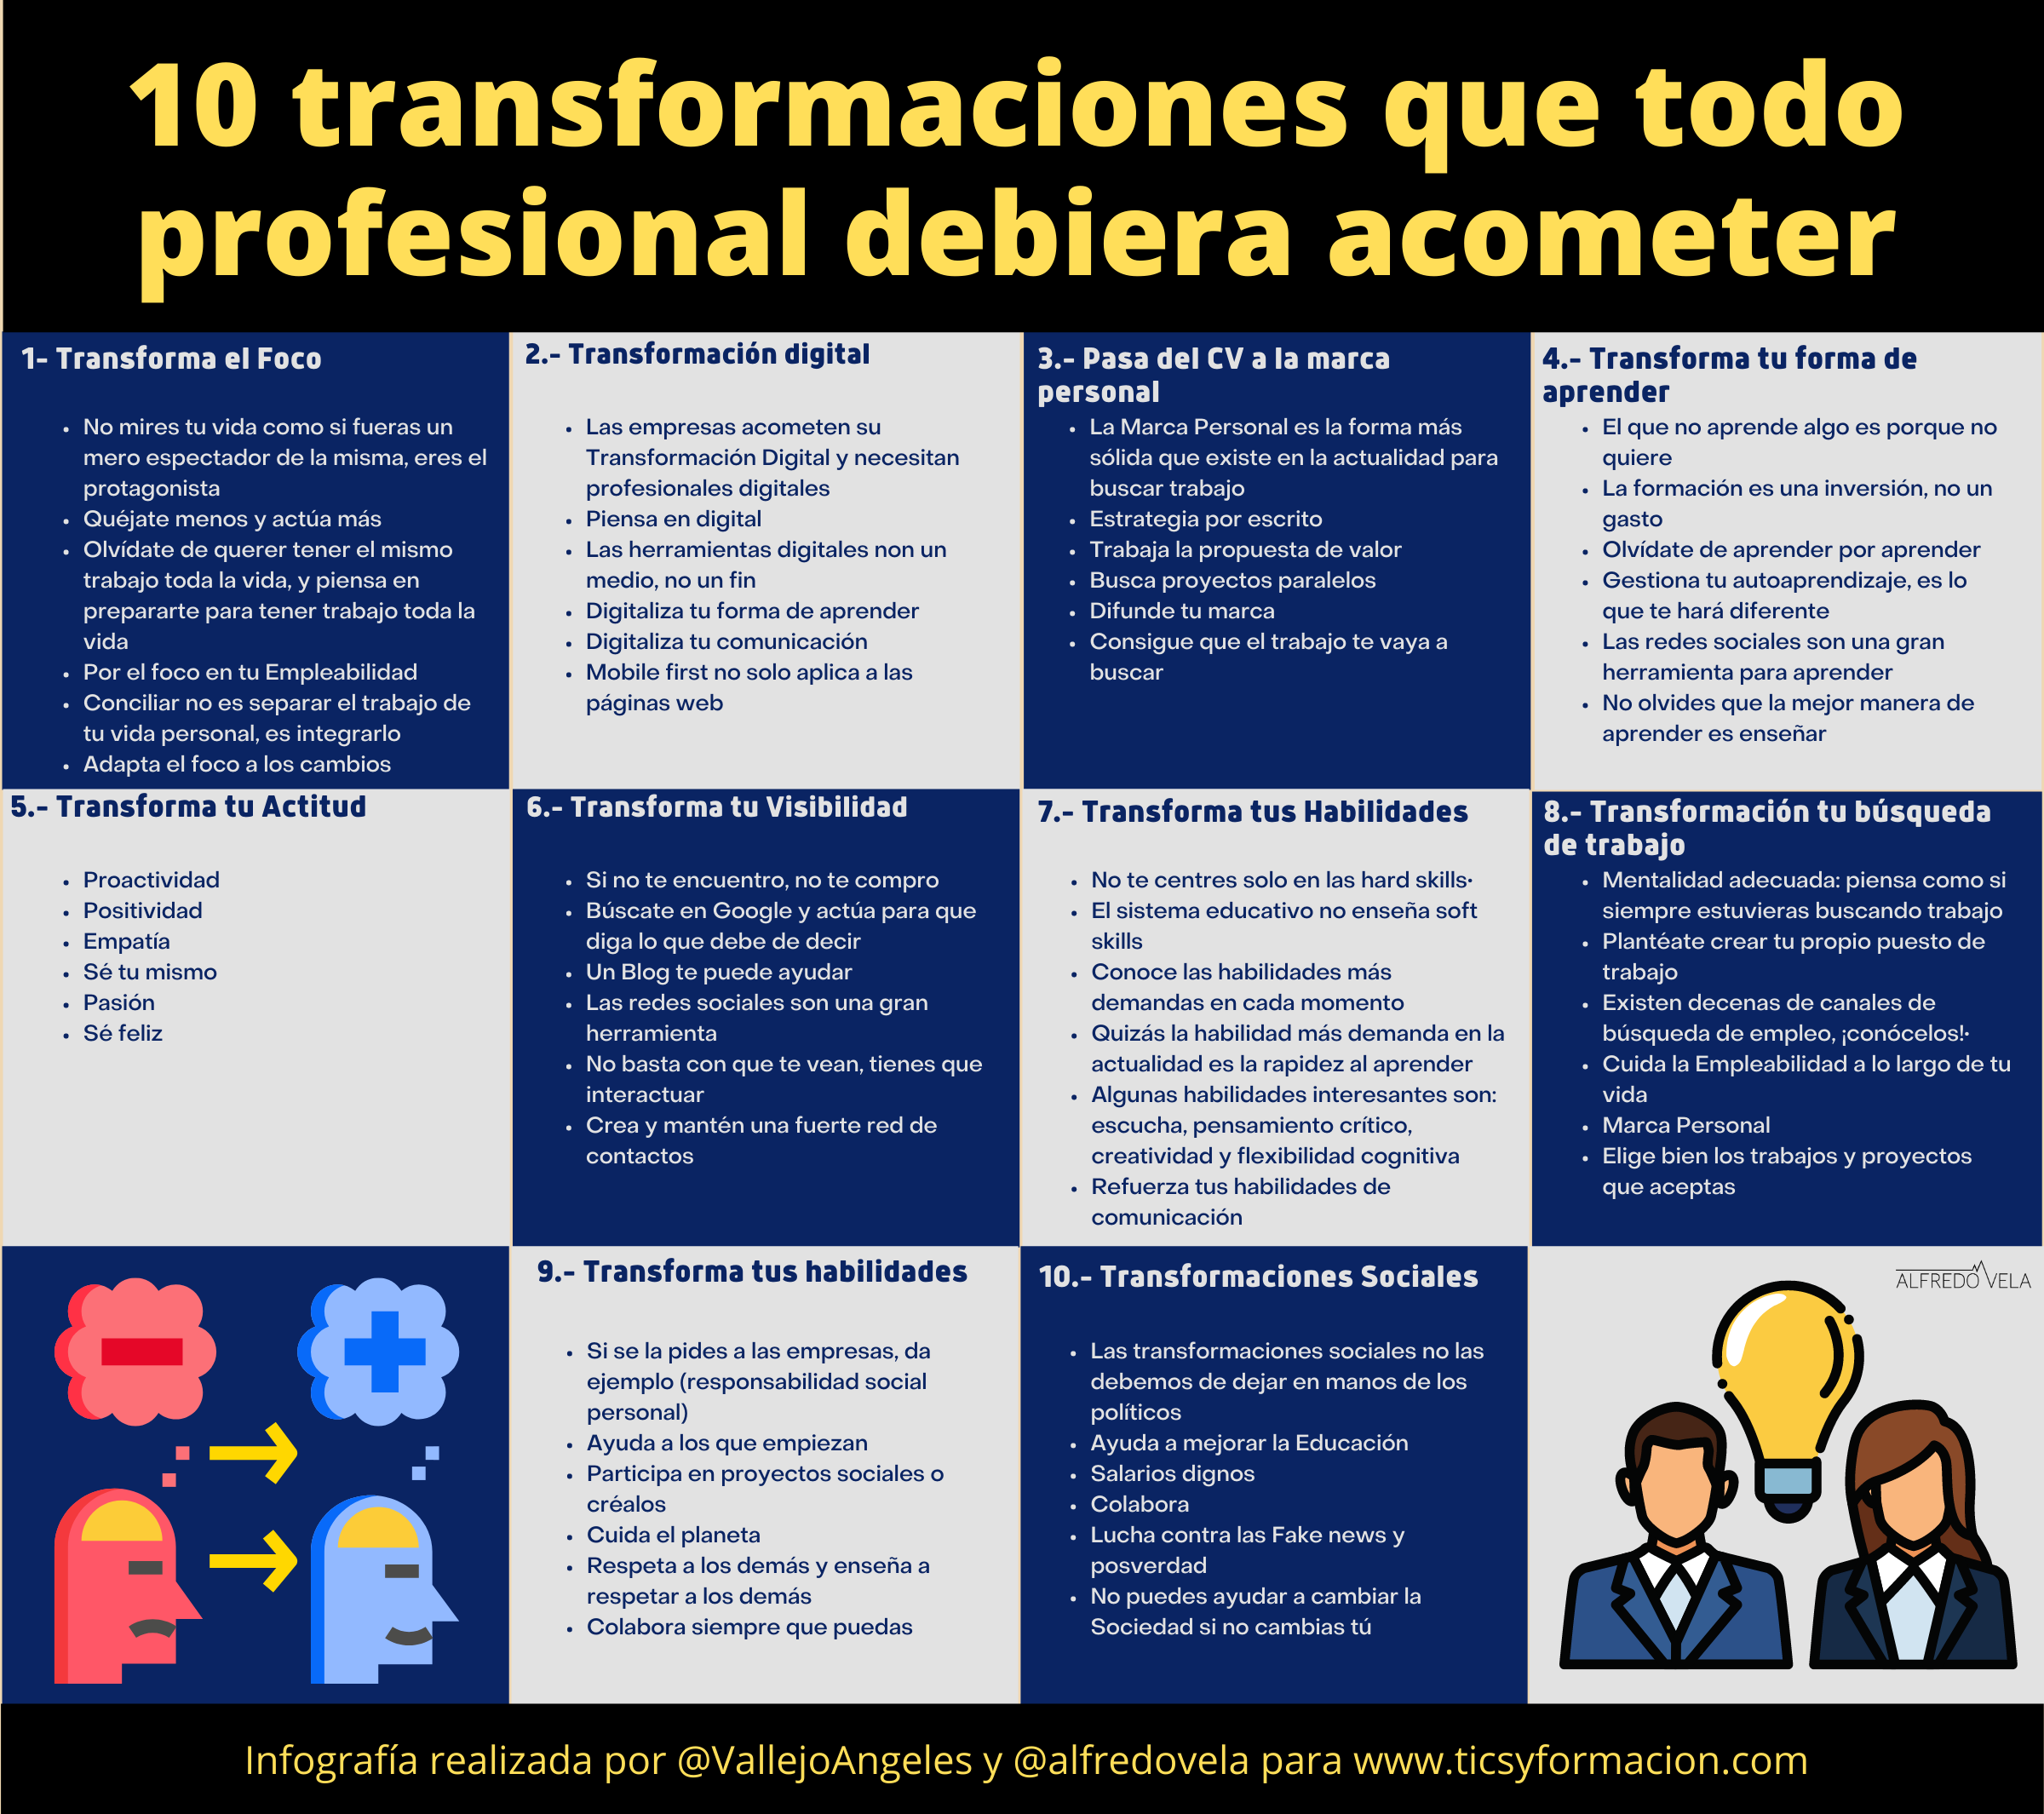 10 transformaciones que todo profesional debiera acometer #infografia #OrientaciónLaboral #RRHH